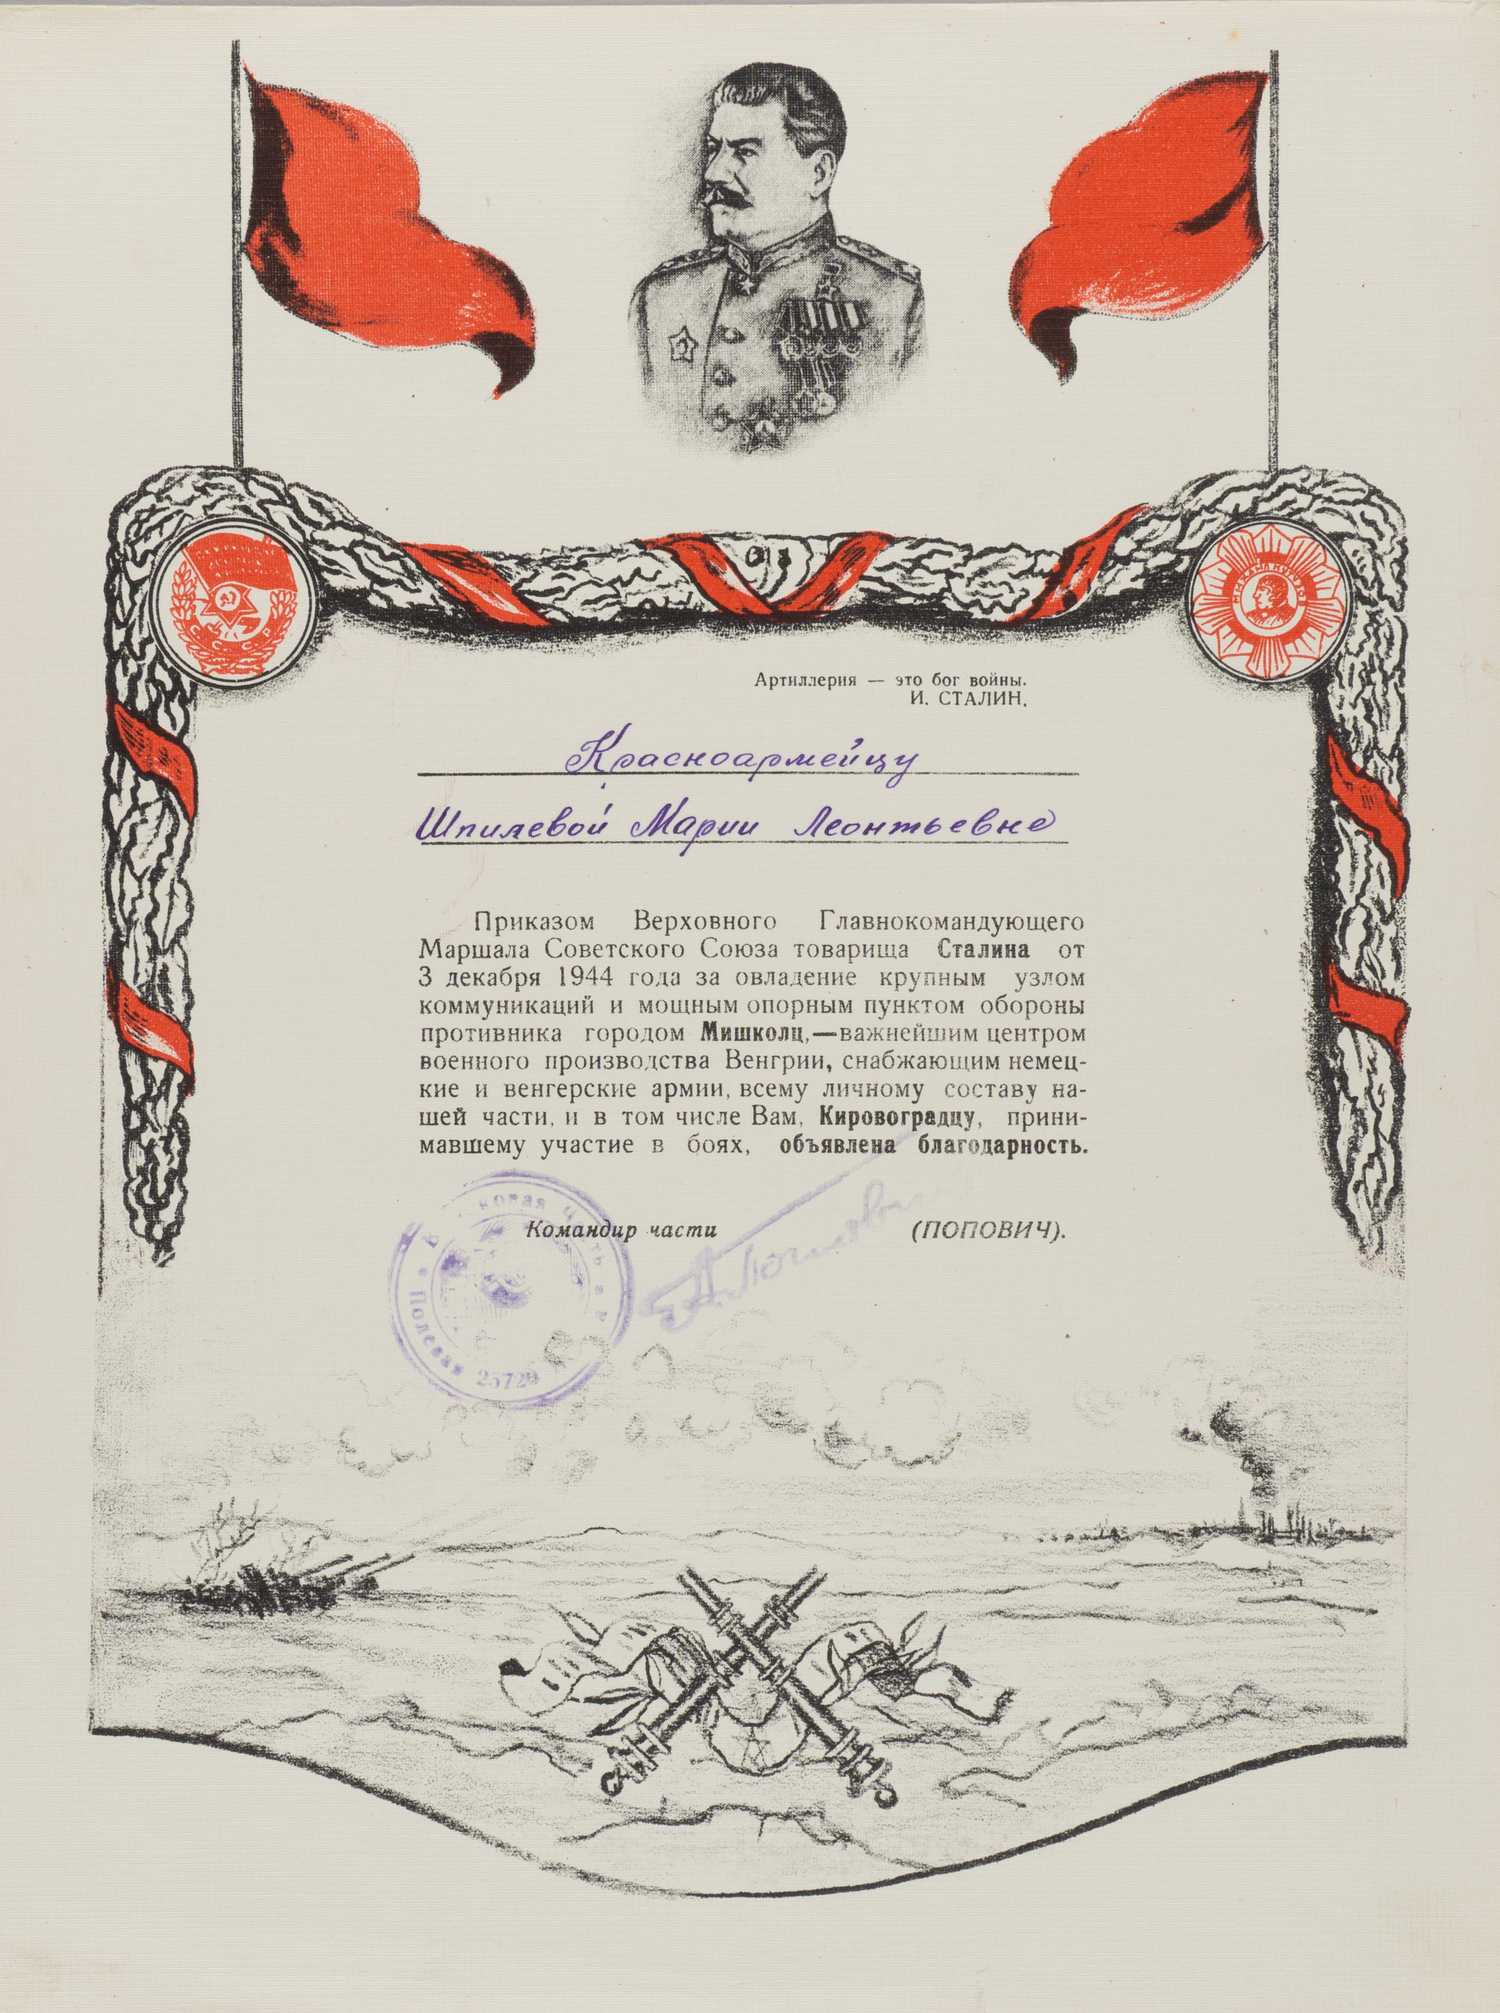 Иллюстрированный лист (благодарность) за овладение городом Мишколц на имя красноармейца Марии Леонтьевны Шпилевой. 1944.